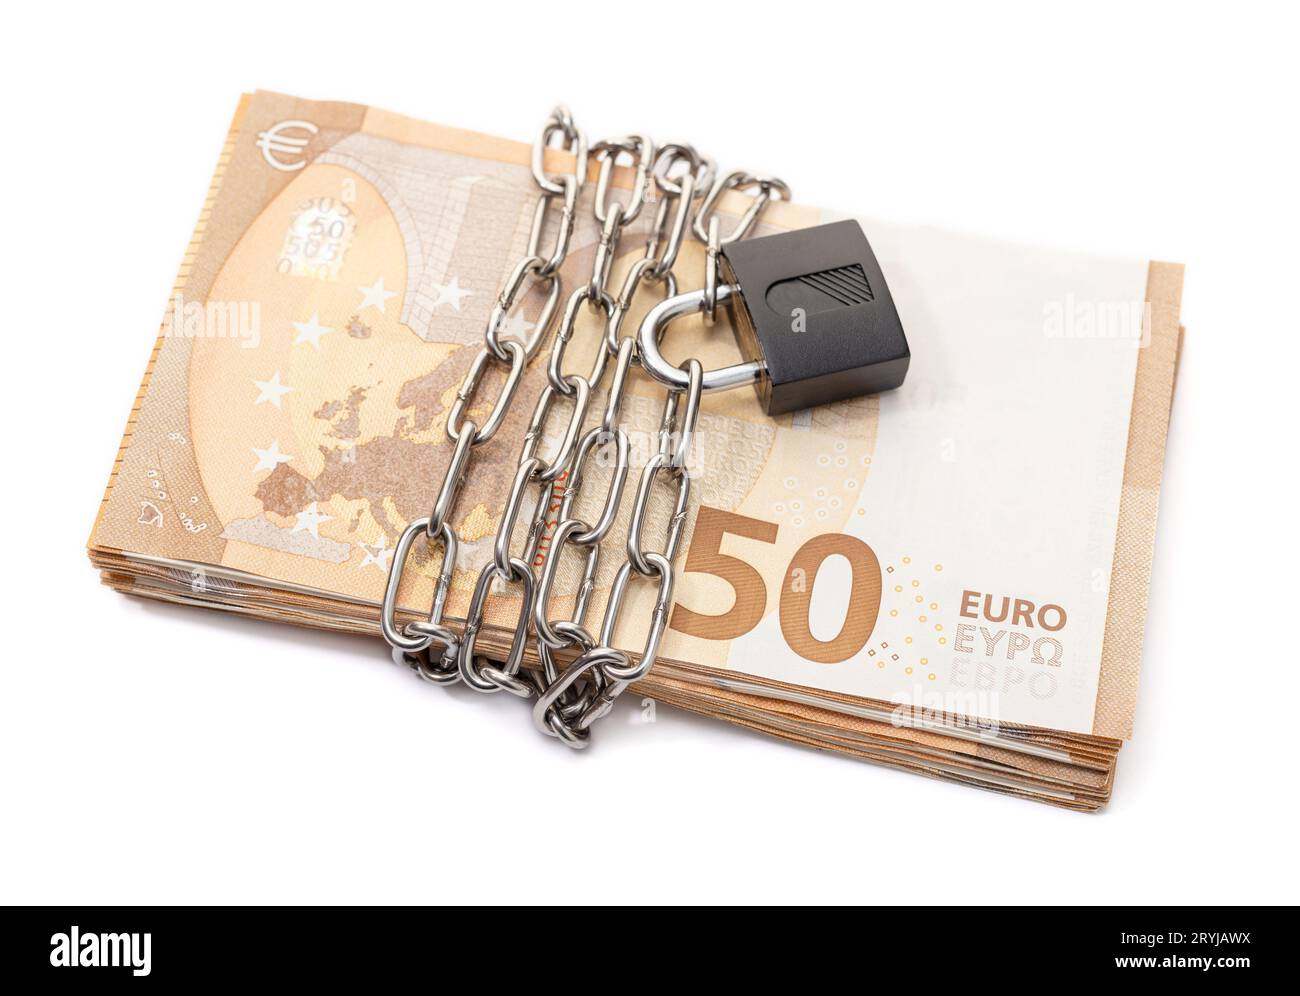 Sicherheit und Kette auf Euro-Banknoten, isoliert auf weißem Hintergrund. Währungskrise, Finanzprobleme, Zahlungsunfähigkeit Stockfoto